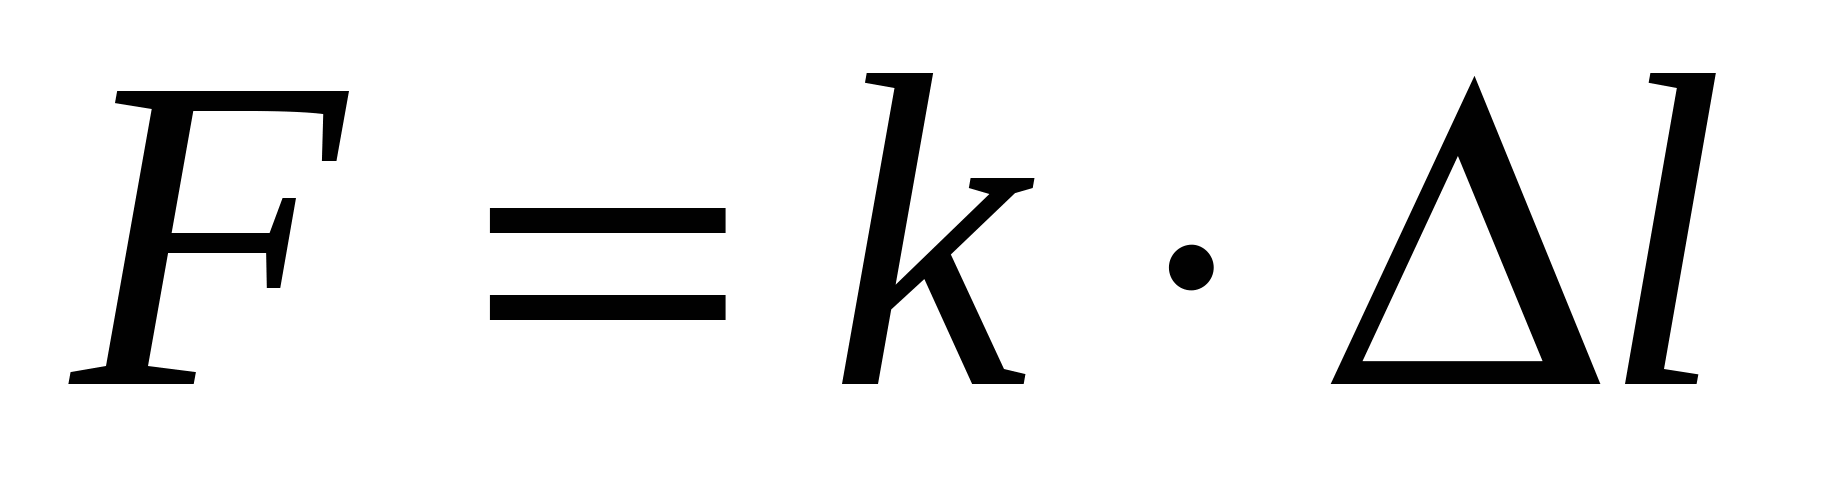 F k l l 0